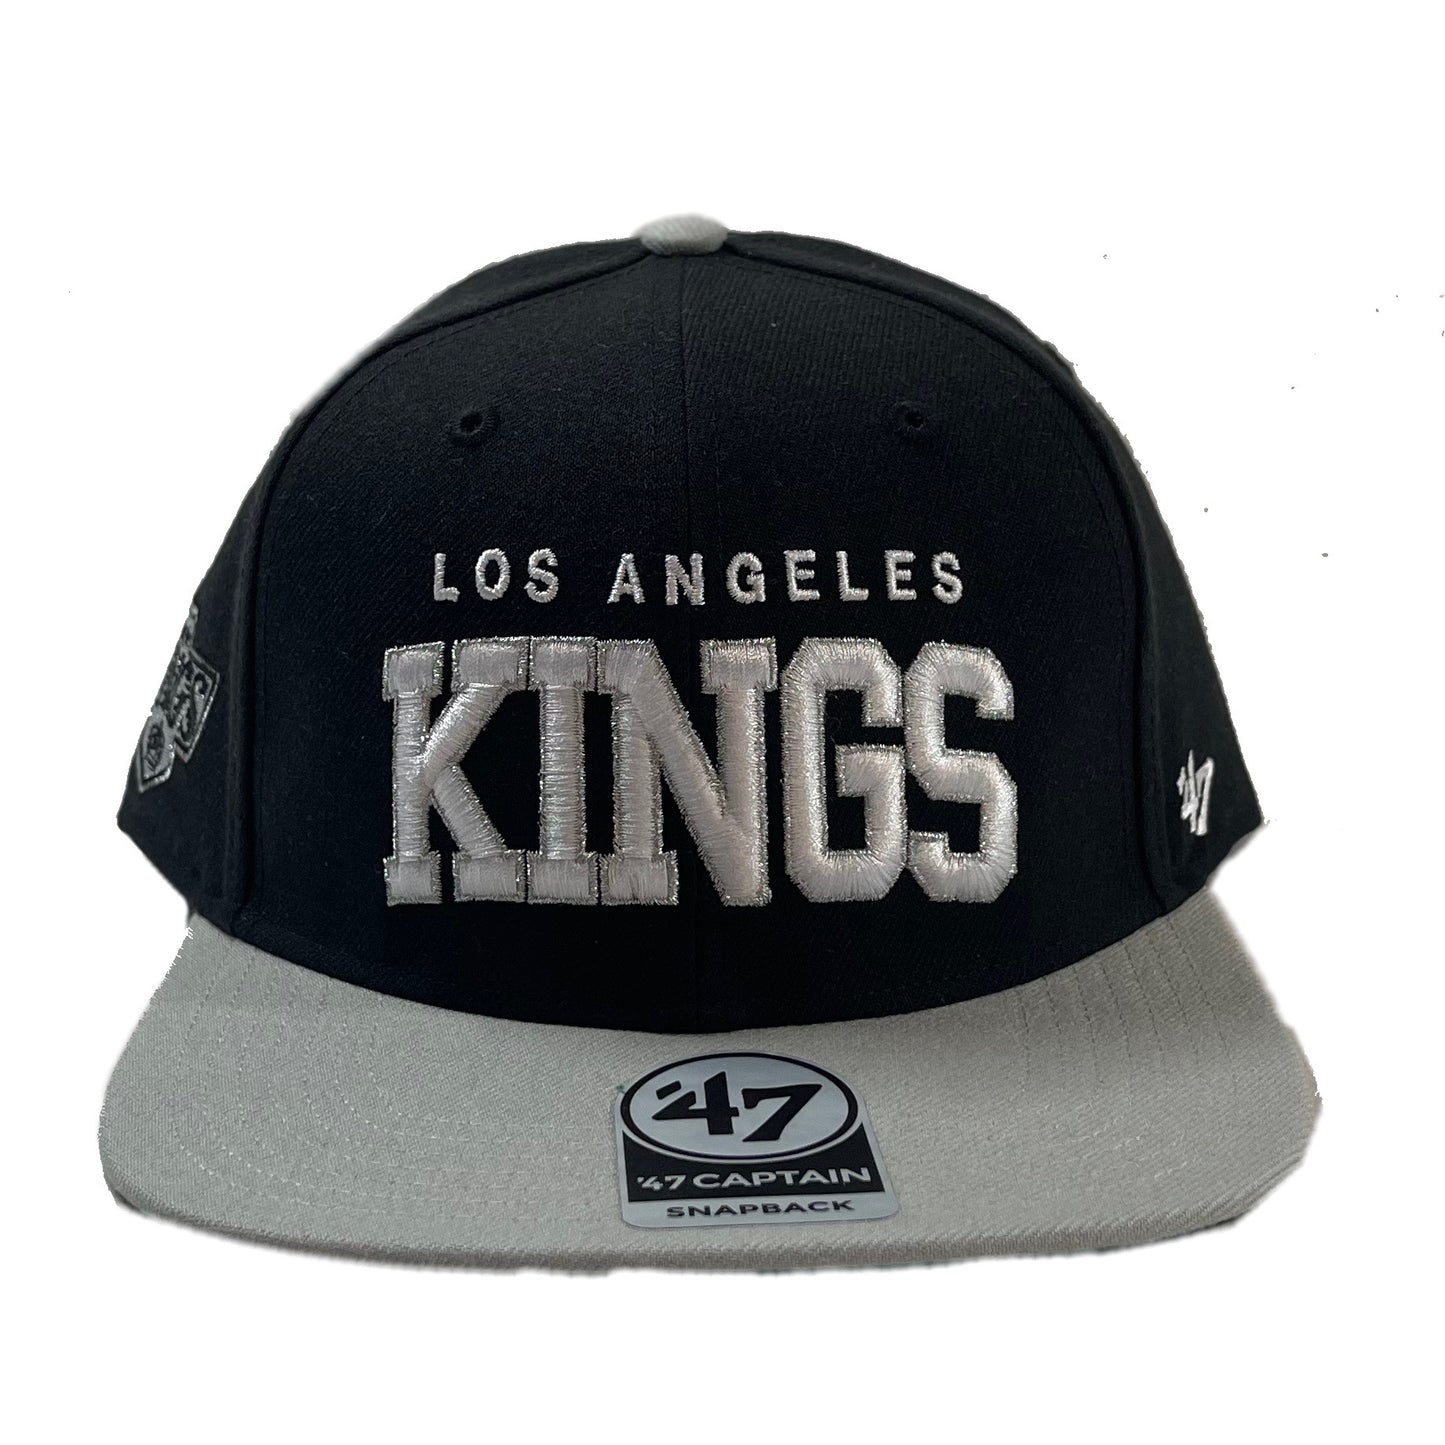 Los Angeles Kings (Black) Snapbacks